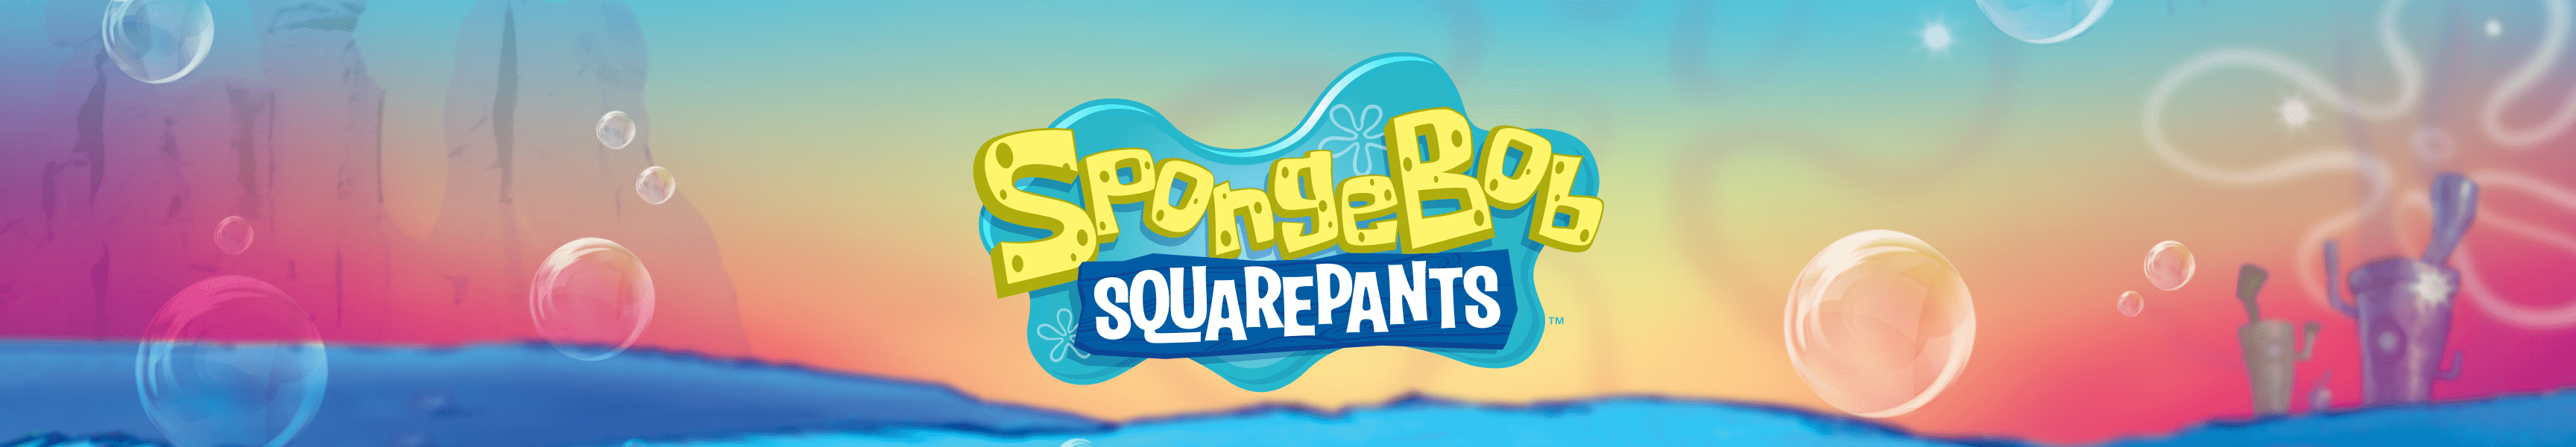 SpongeBob SquarePants Best Sellers